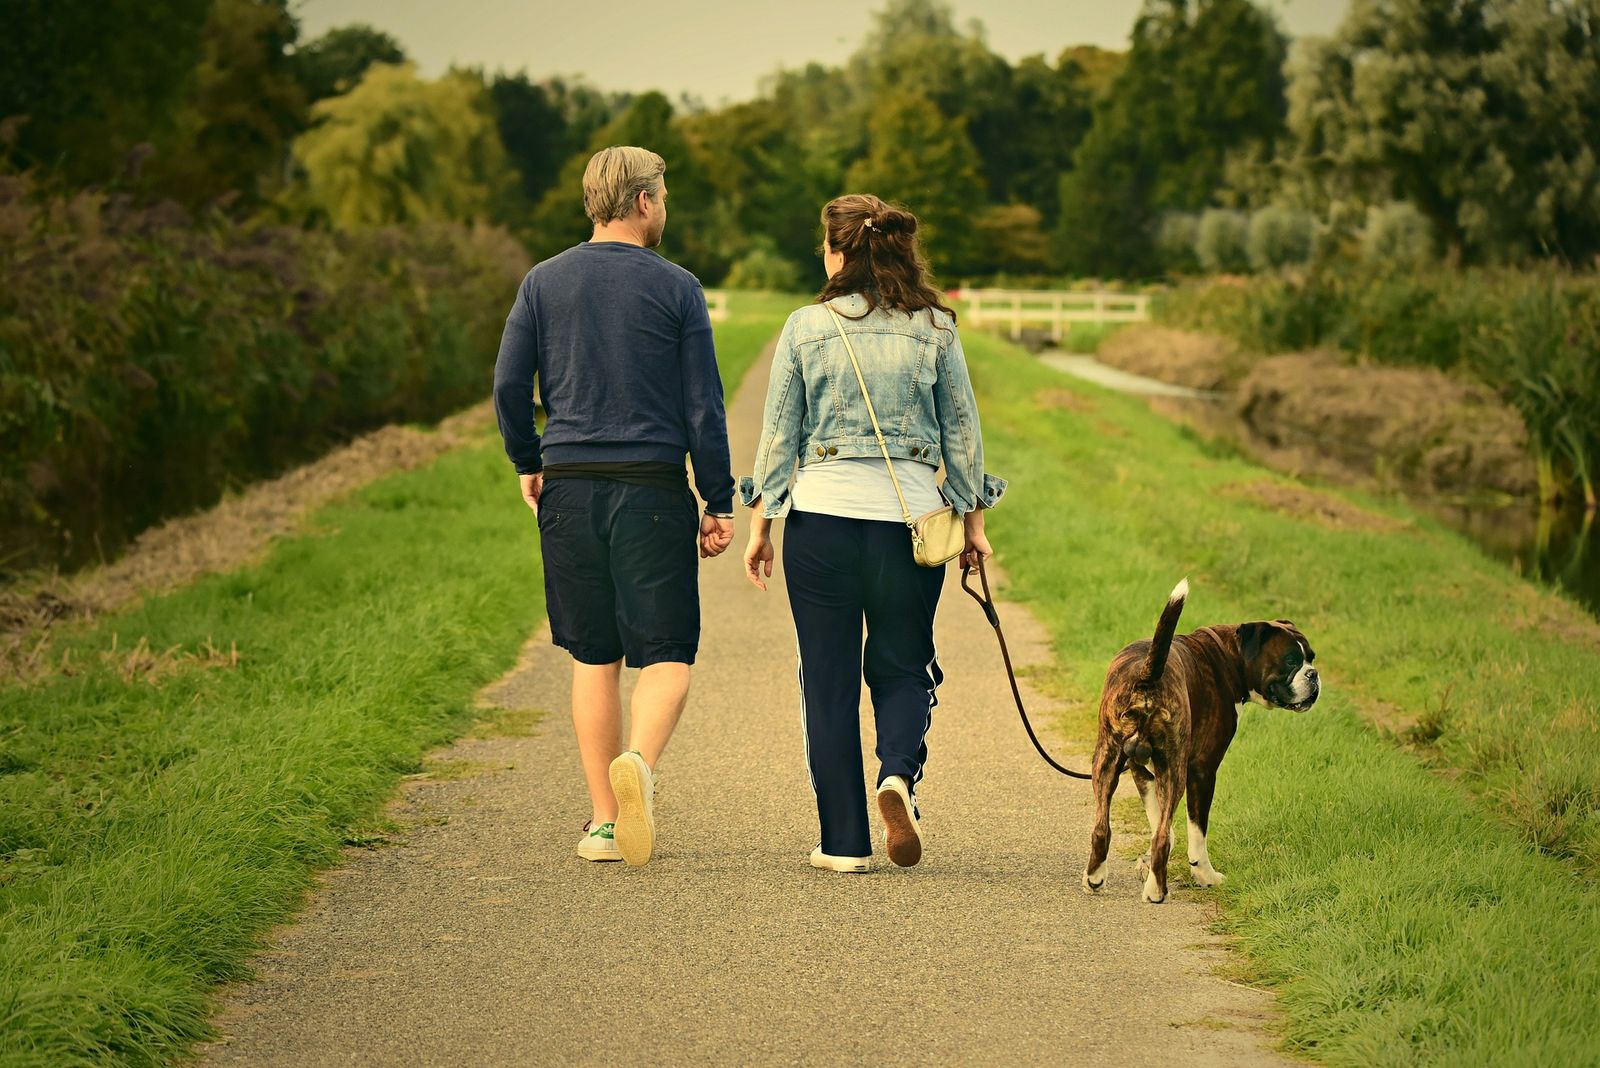 Ein junger Mann mit kurzer Hose und einer Frau mit langer Jogginghose gehen mit einem Boxer an der Leine auf einem Weg spazieren